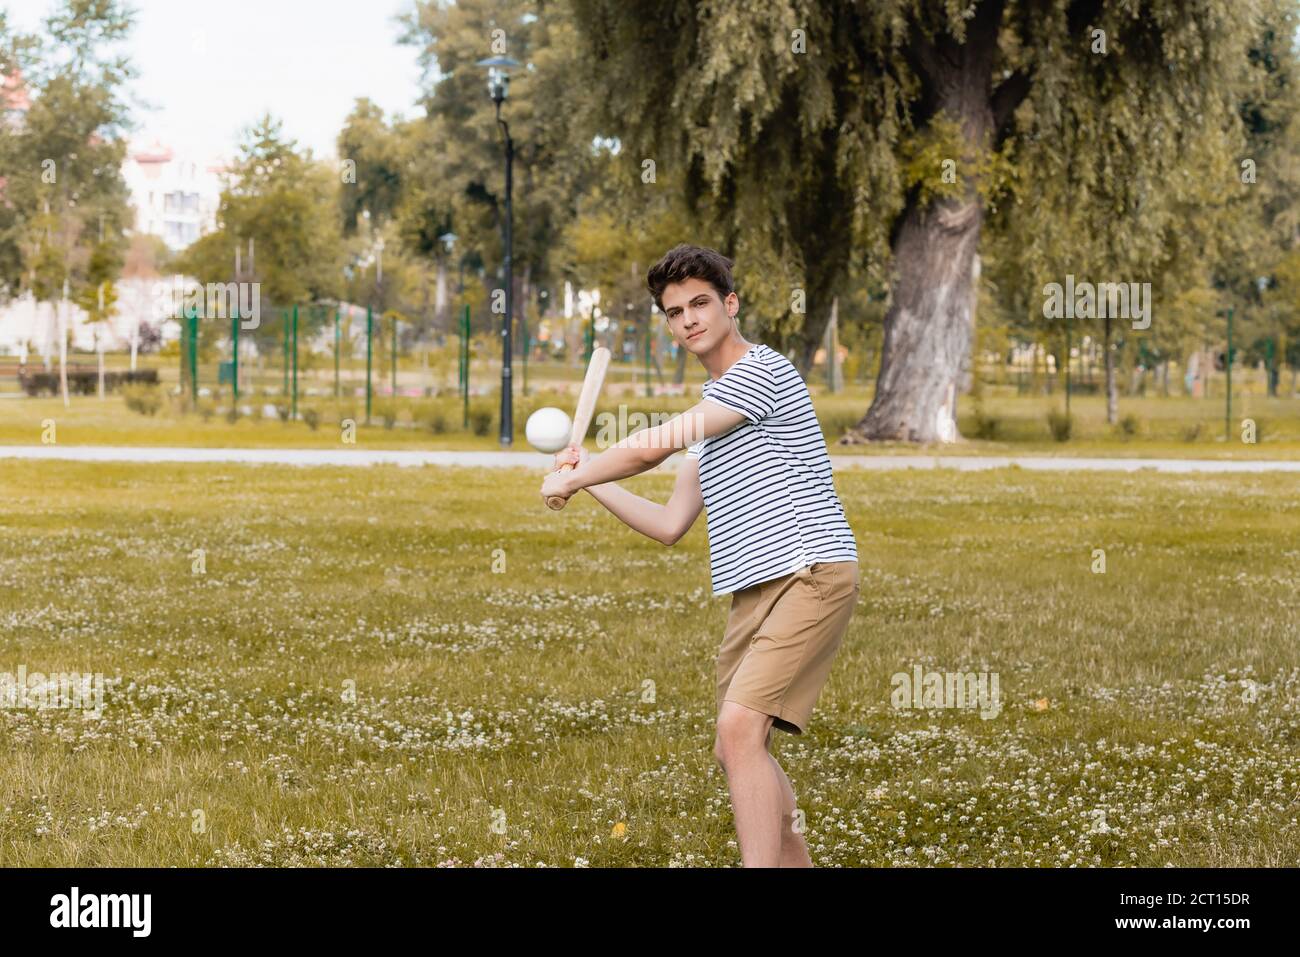 Teenager Junge hält Softballschläger und spielen Baseball im Park Stockfoto